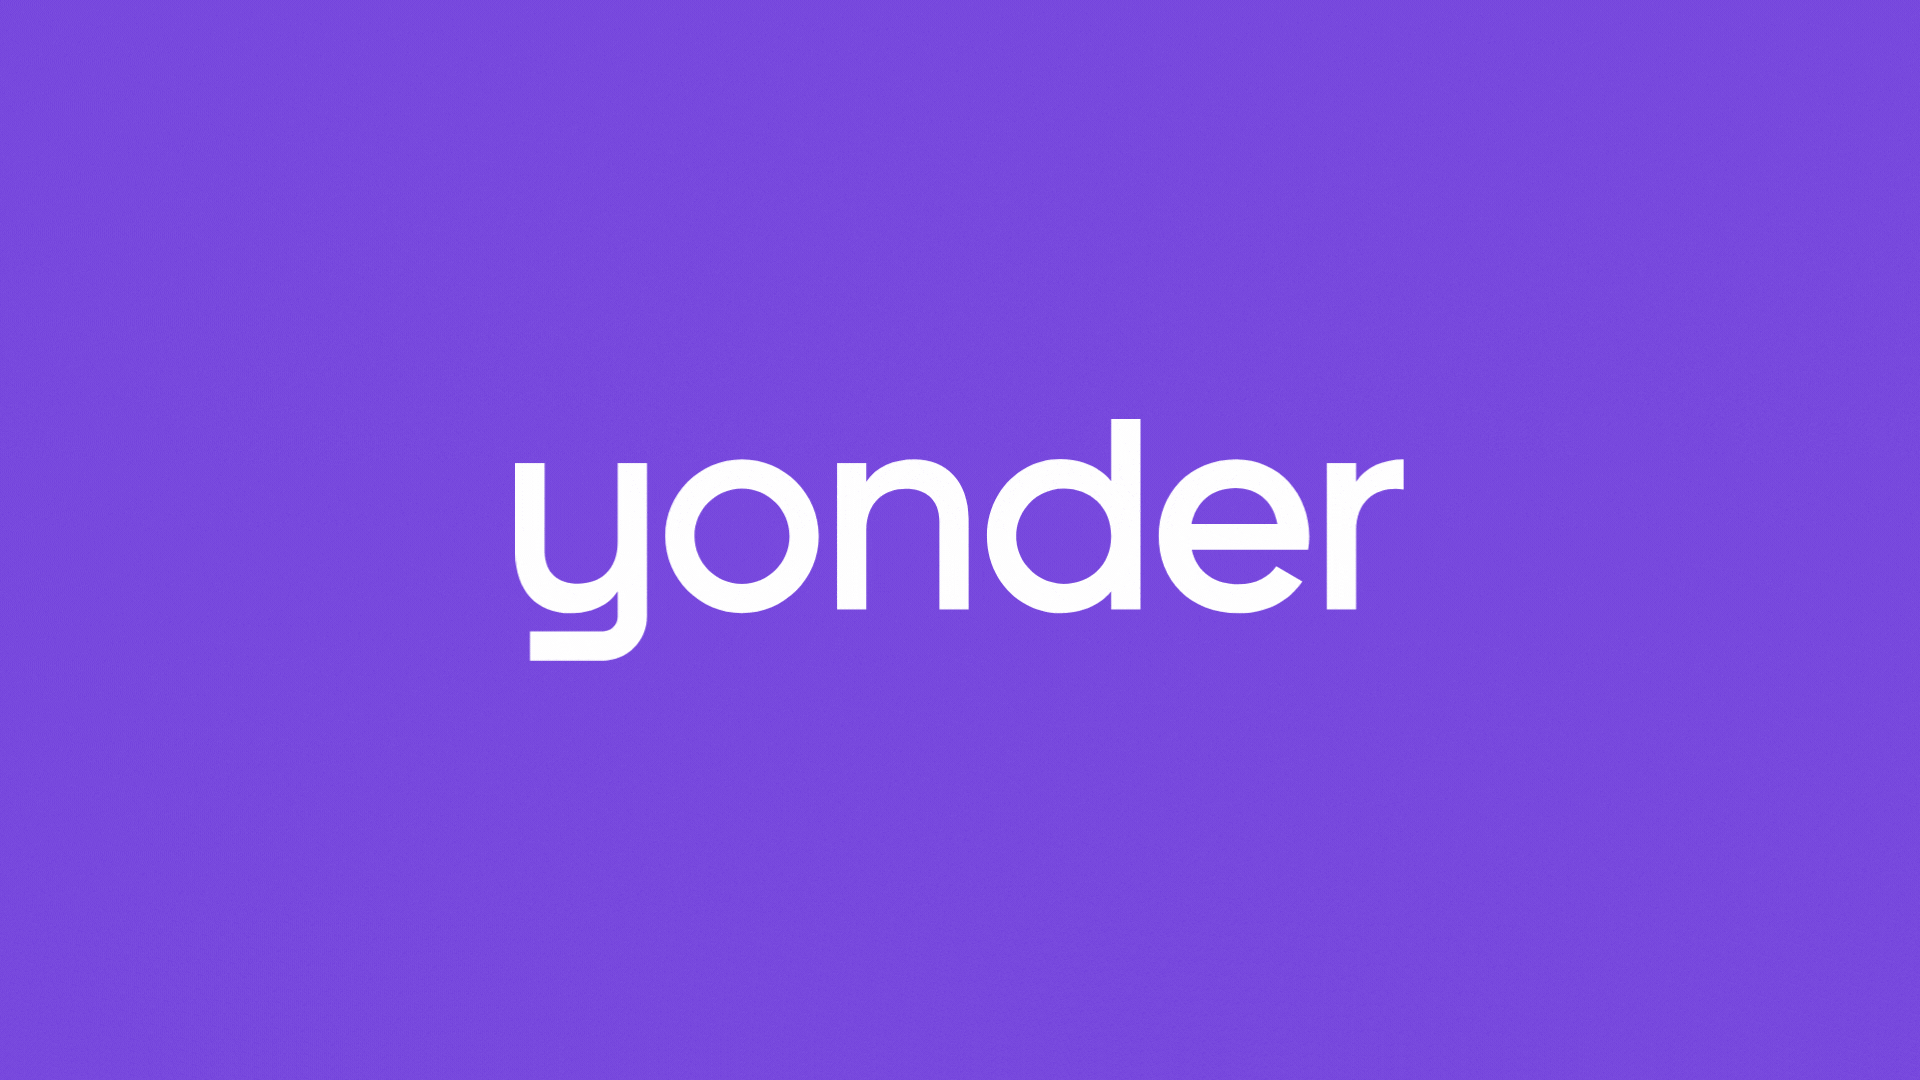 We're saying goodbye to Yonder